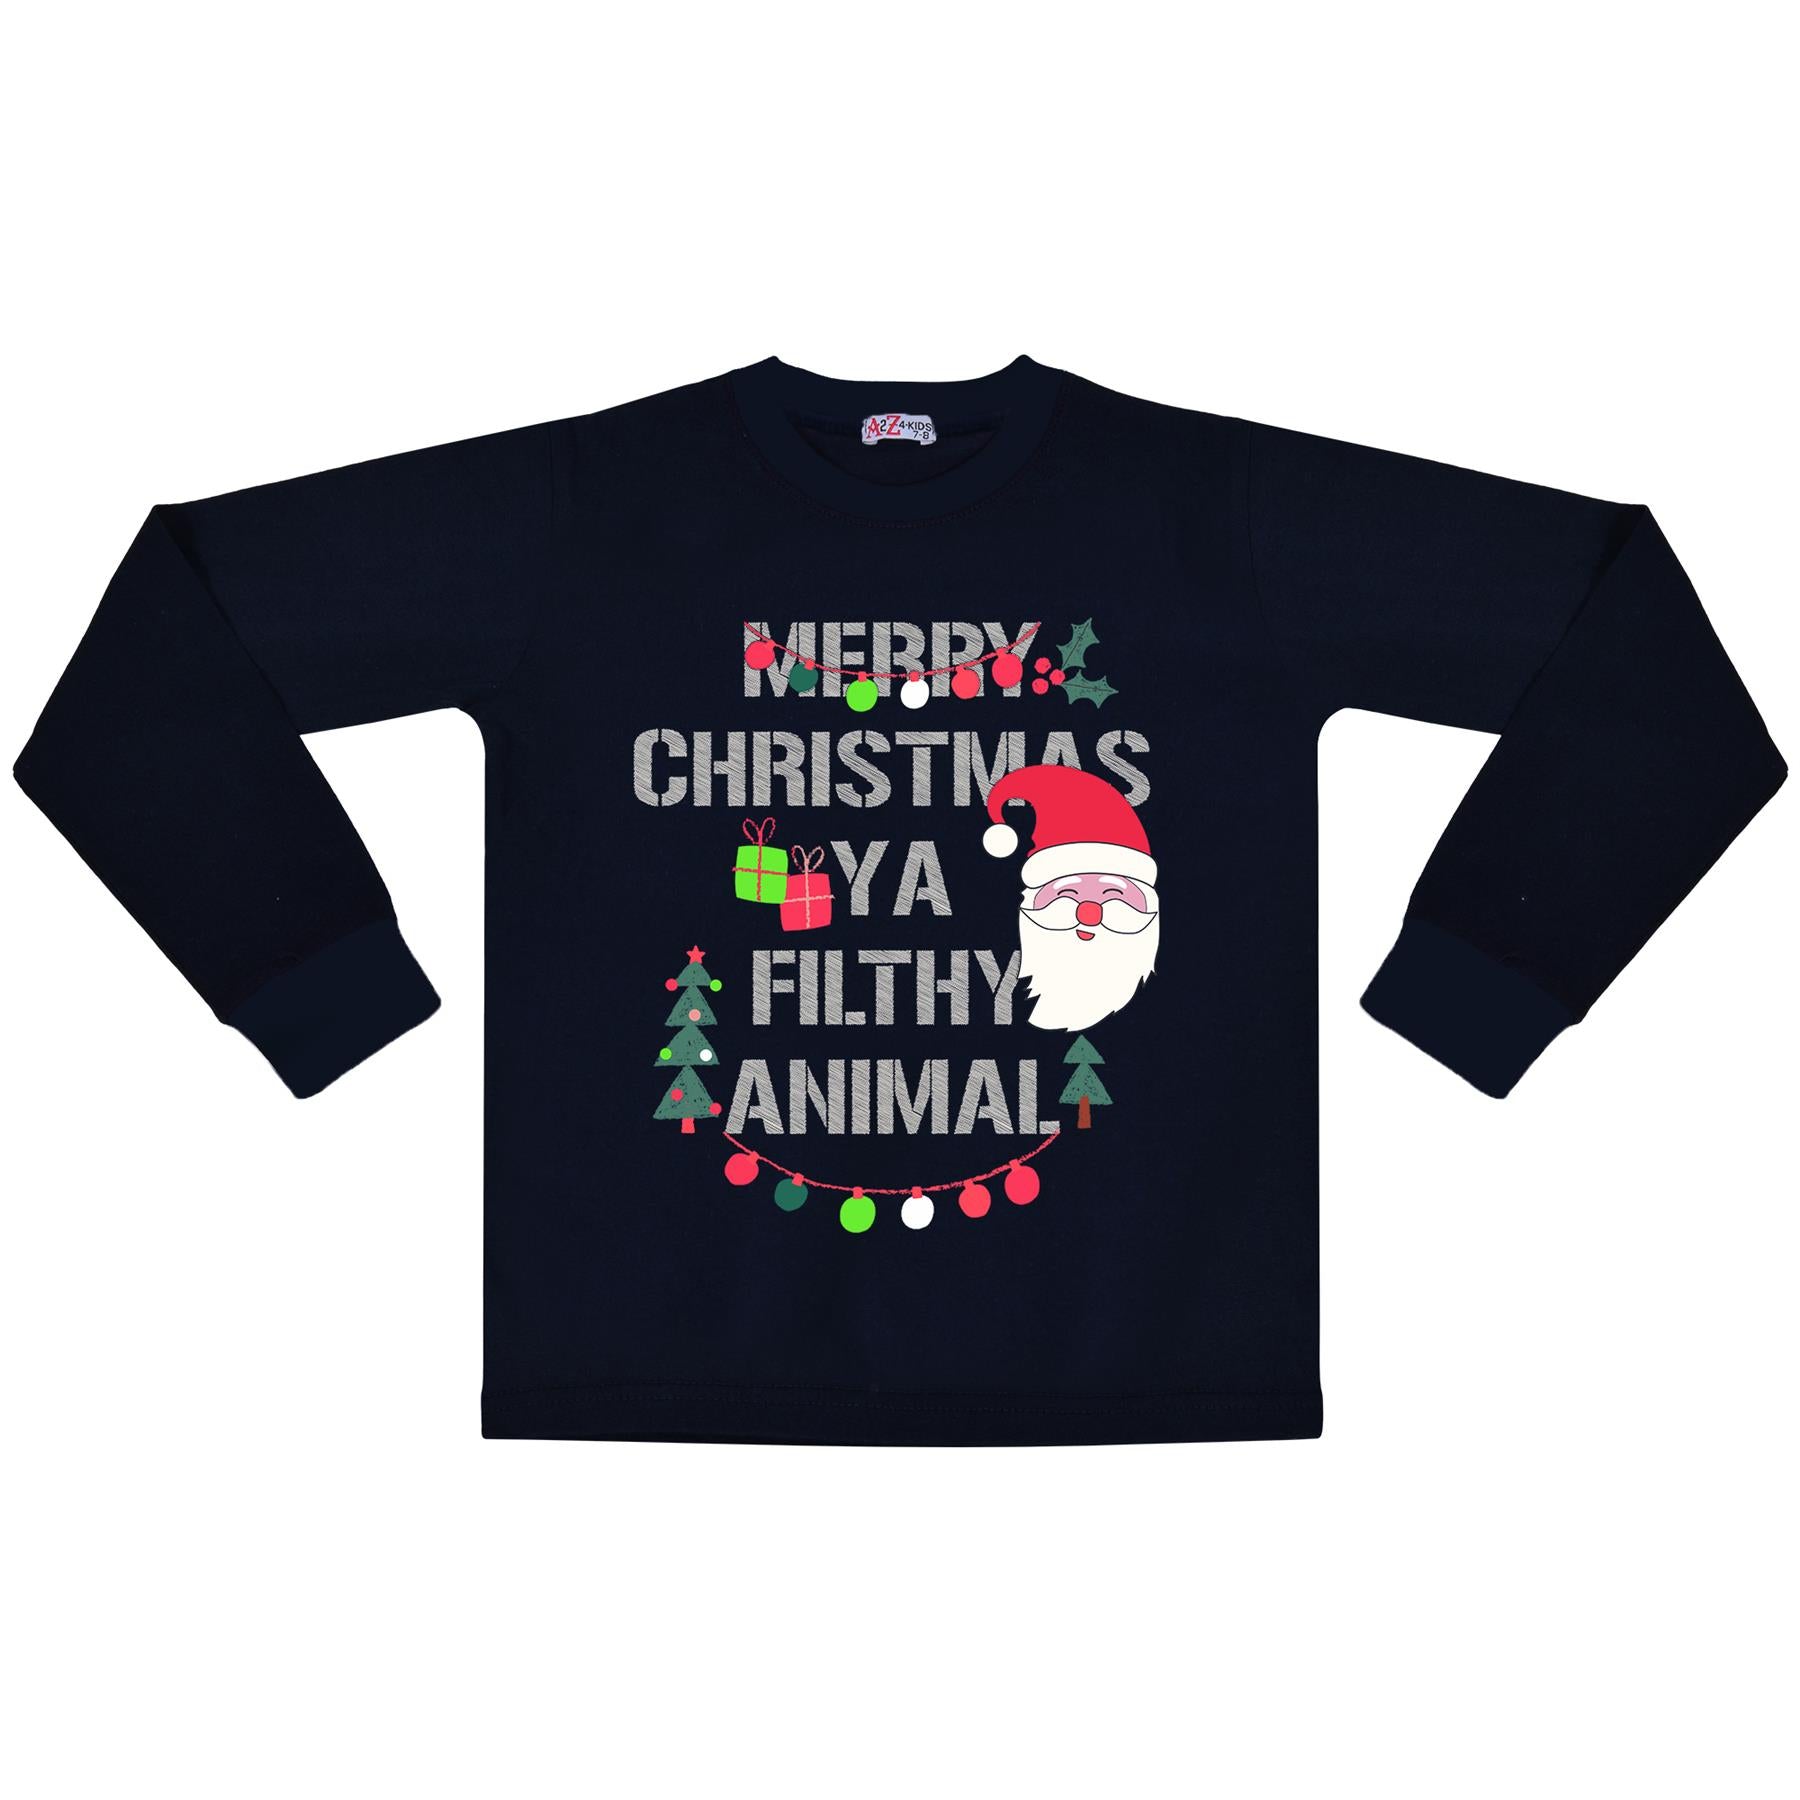 Kids Girls Boys Christmas Pyjamas Ya Filthy Animal Print Navy Lounge Suit